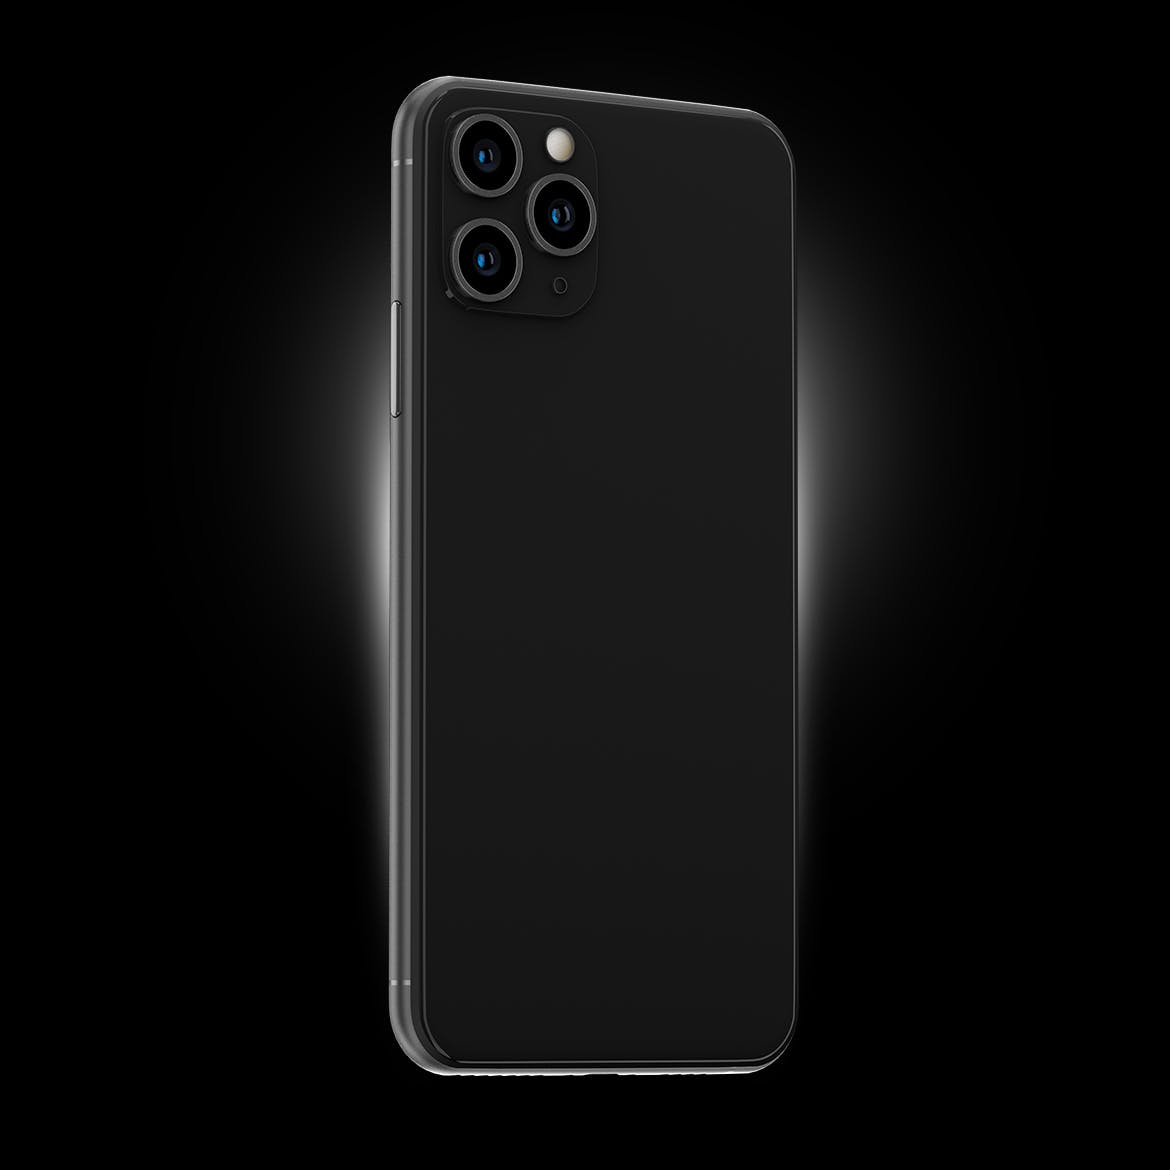 黑色iPhone 11 Pro Max智能手机APP设计预览素材库精选样机 Phone 11 Black PSD Mockups插图(3)